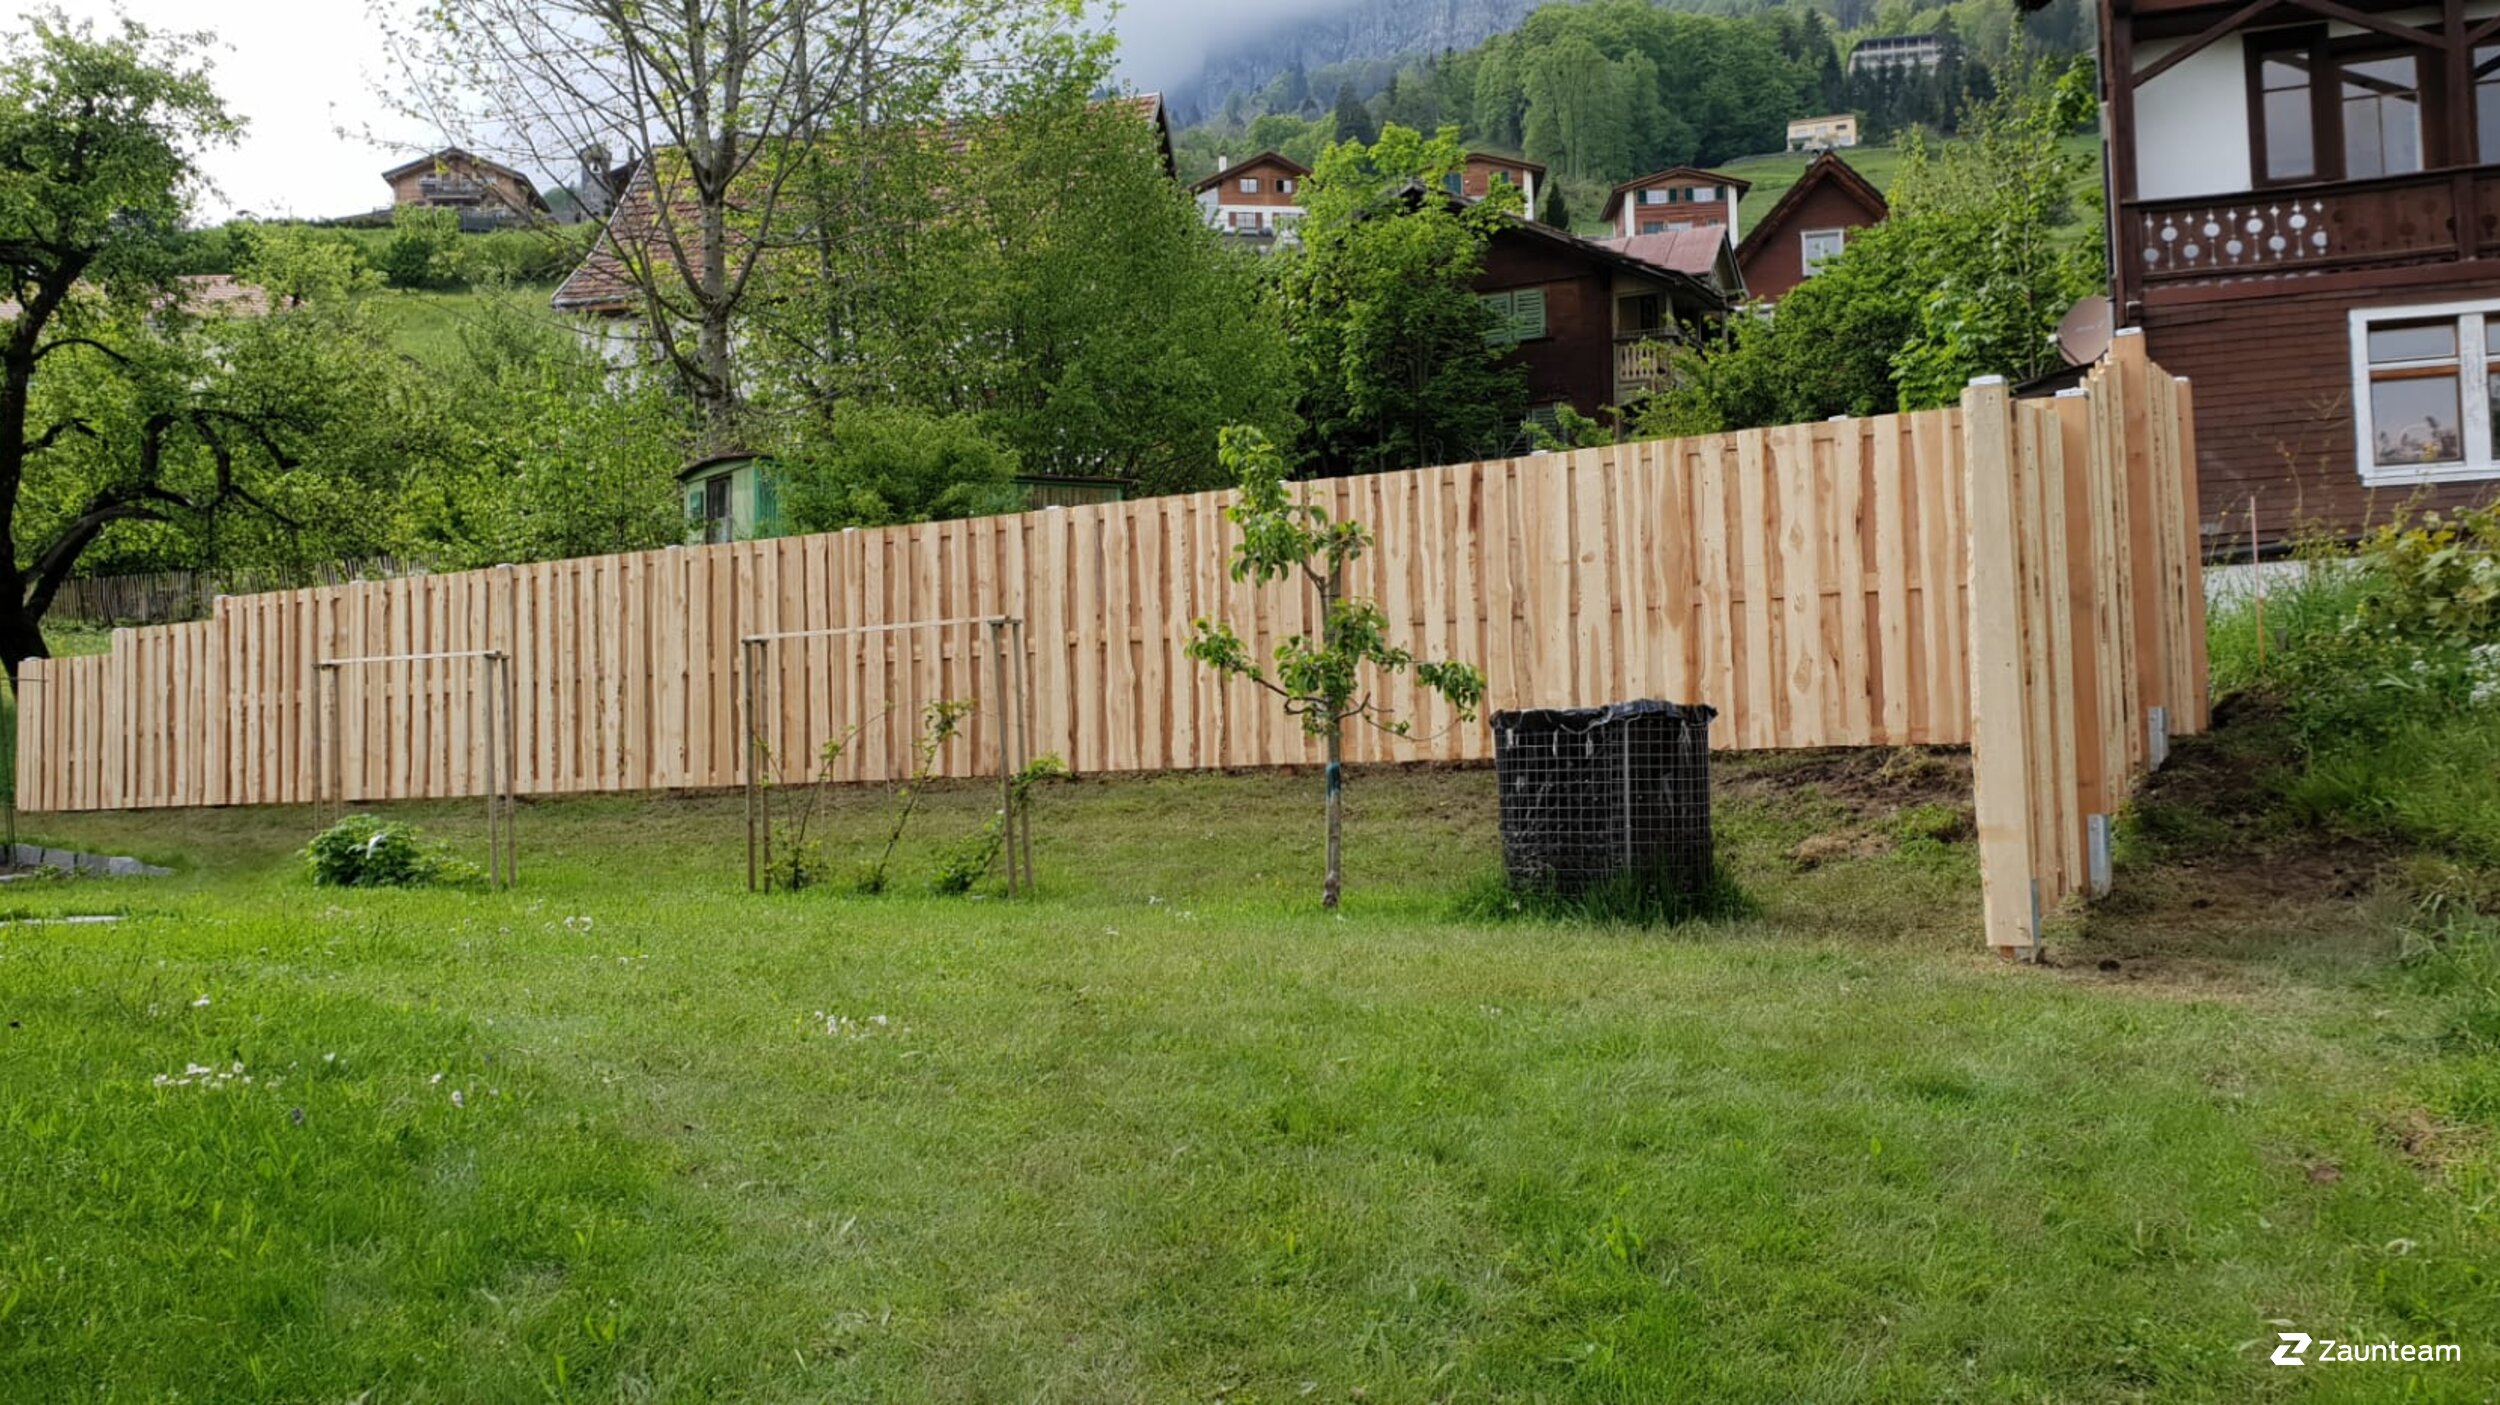 Protection brise-vue en bois de 2019 à 8881 Walenstadtberg Suisse de Zaunteam Heidiland.